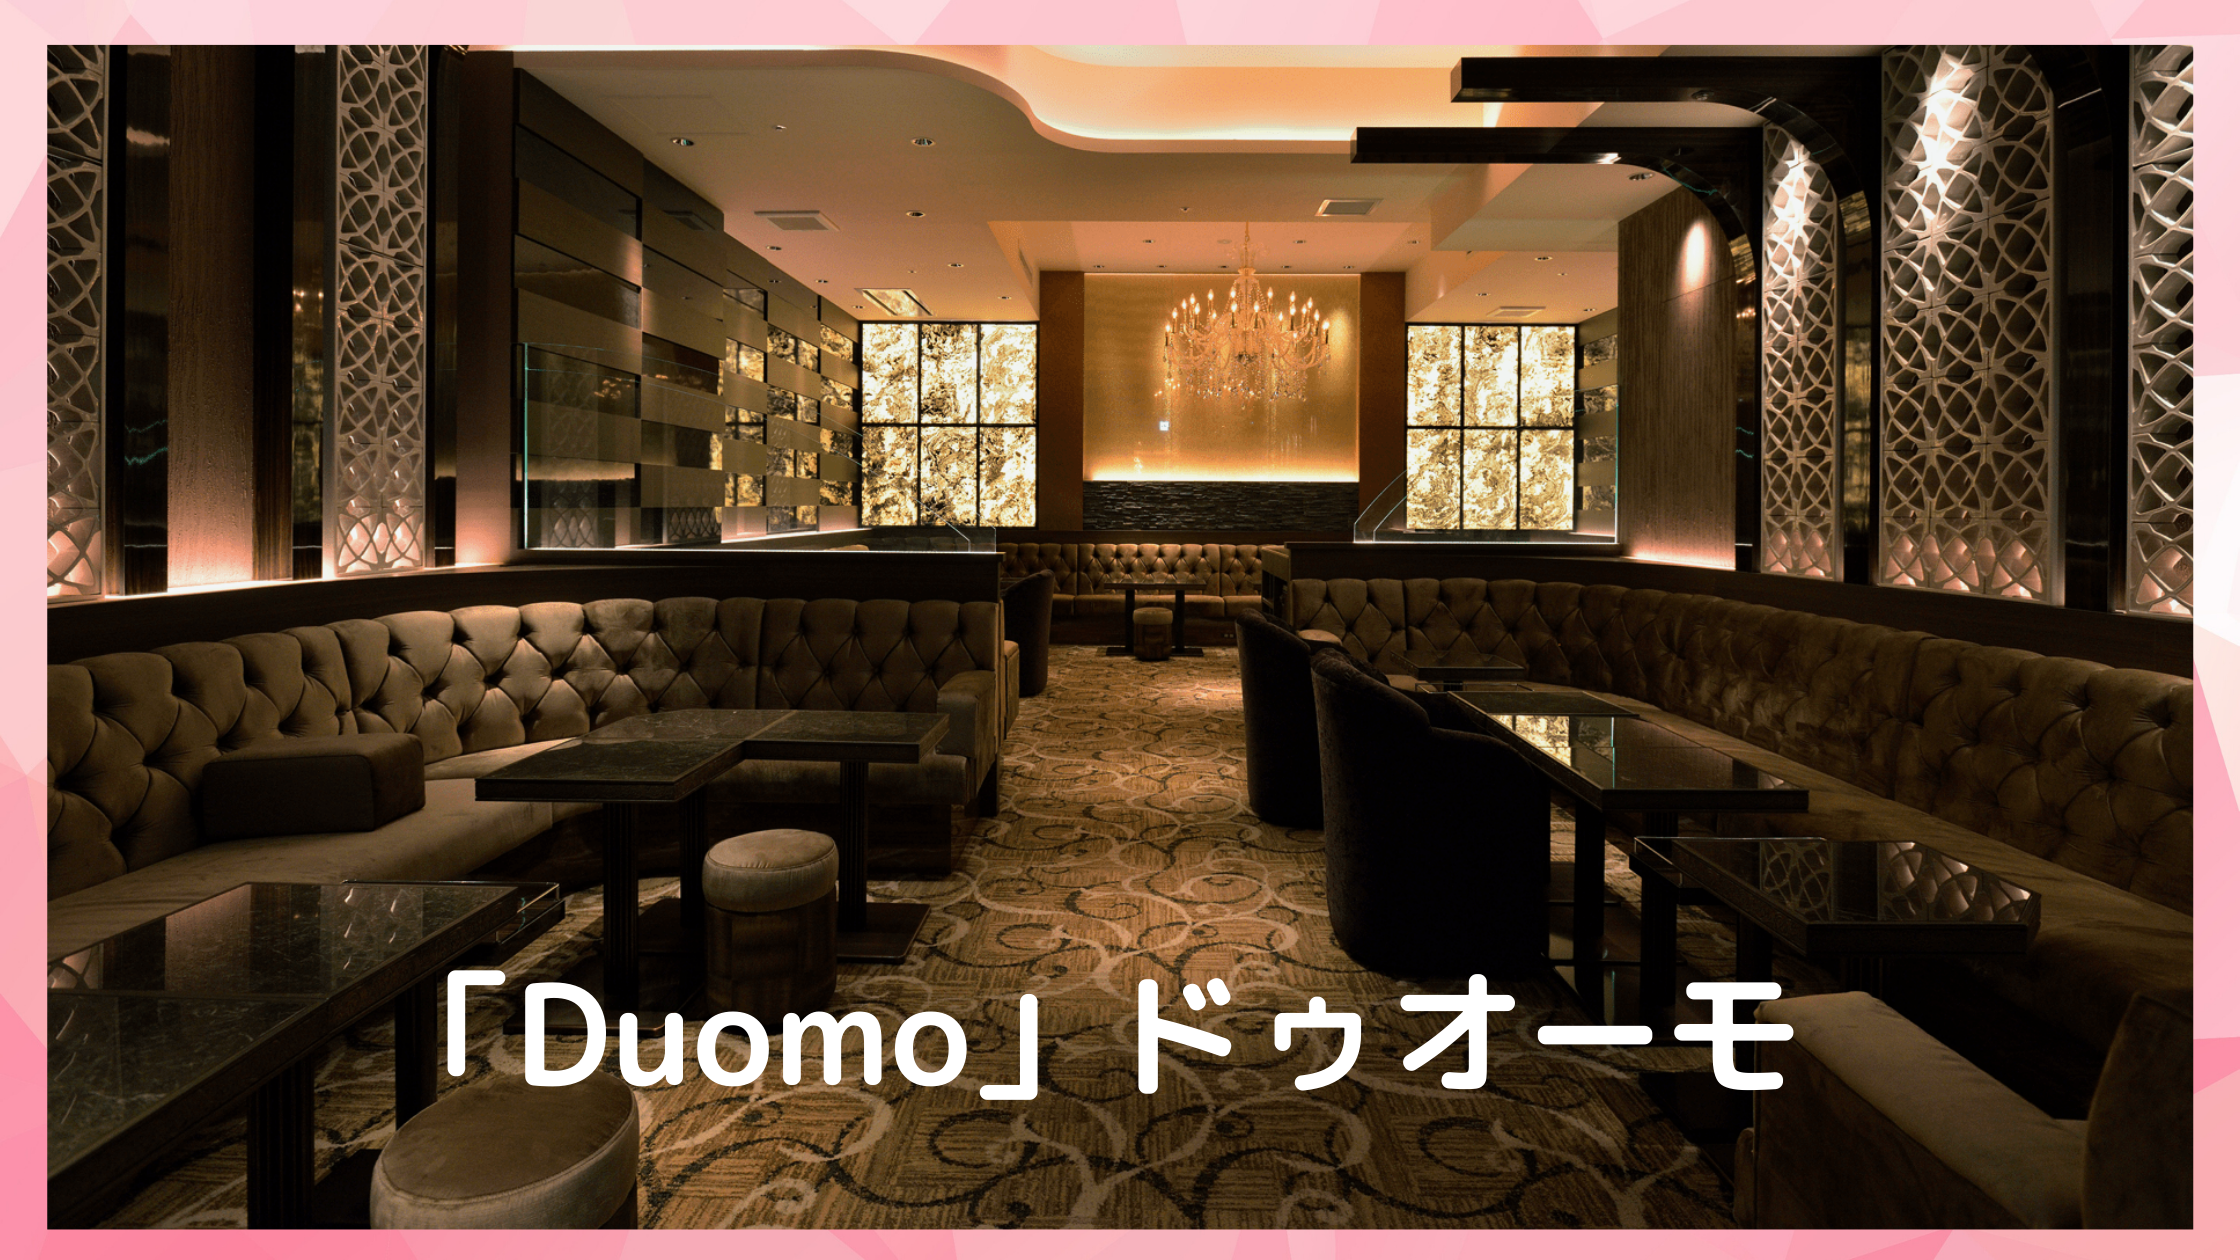 銀座高級クラブ Duomoドゥオーモ の面接体入はこちら 日払いバイト 東京ナイトワーク求人ガイド 六本木 銀座を中心としたキャバクラ 会員制ラウンジ クラブの体入情報をお届け